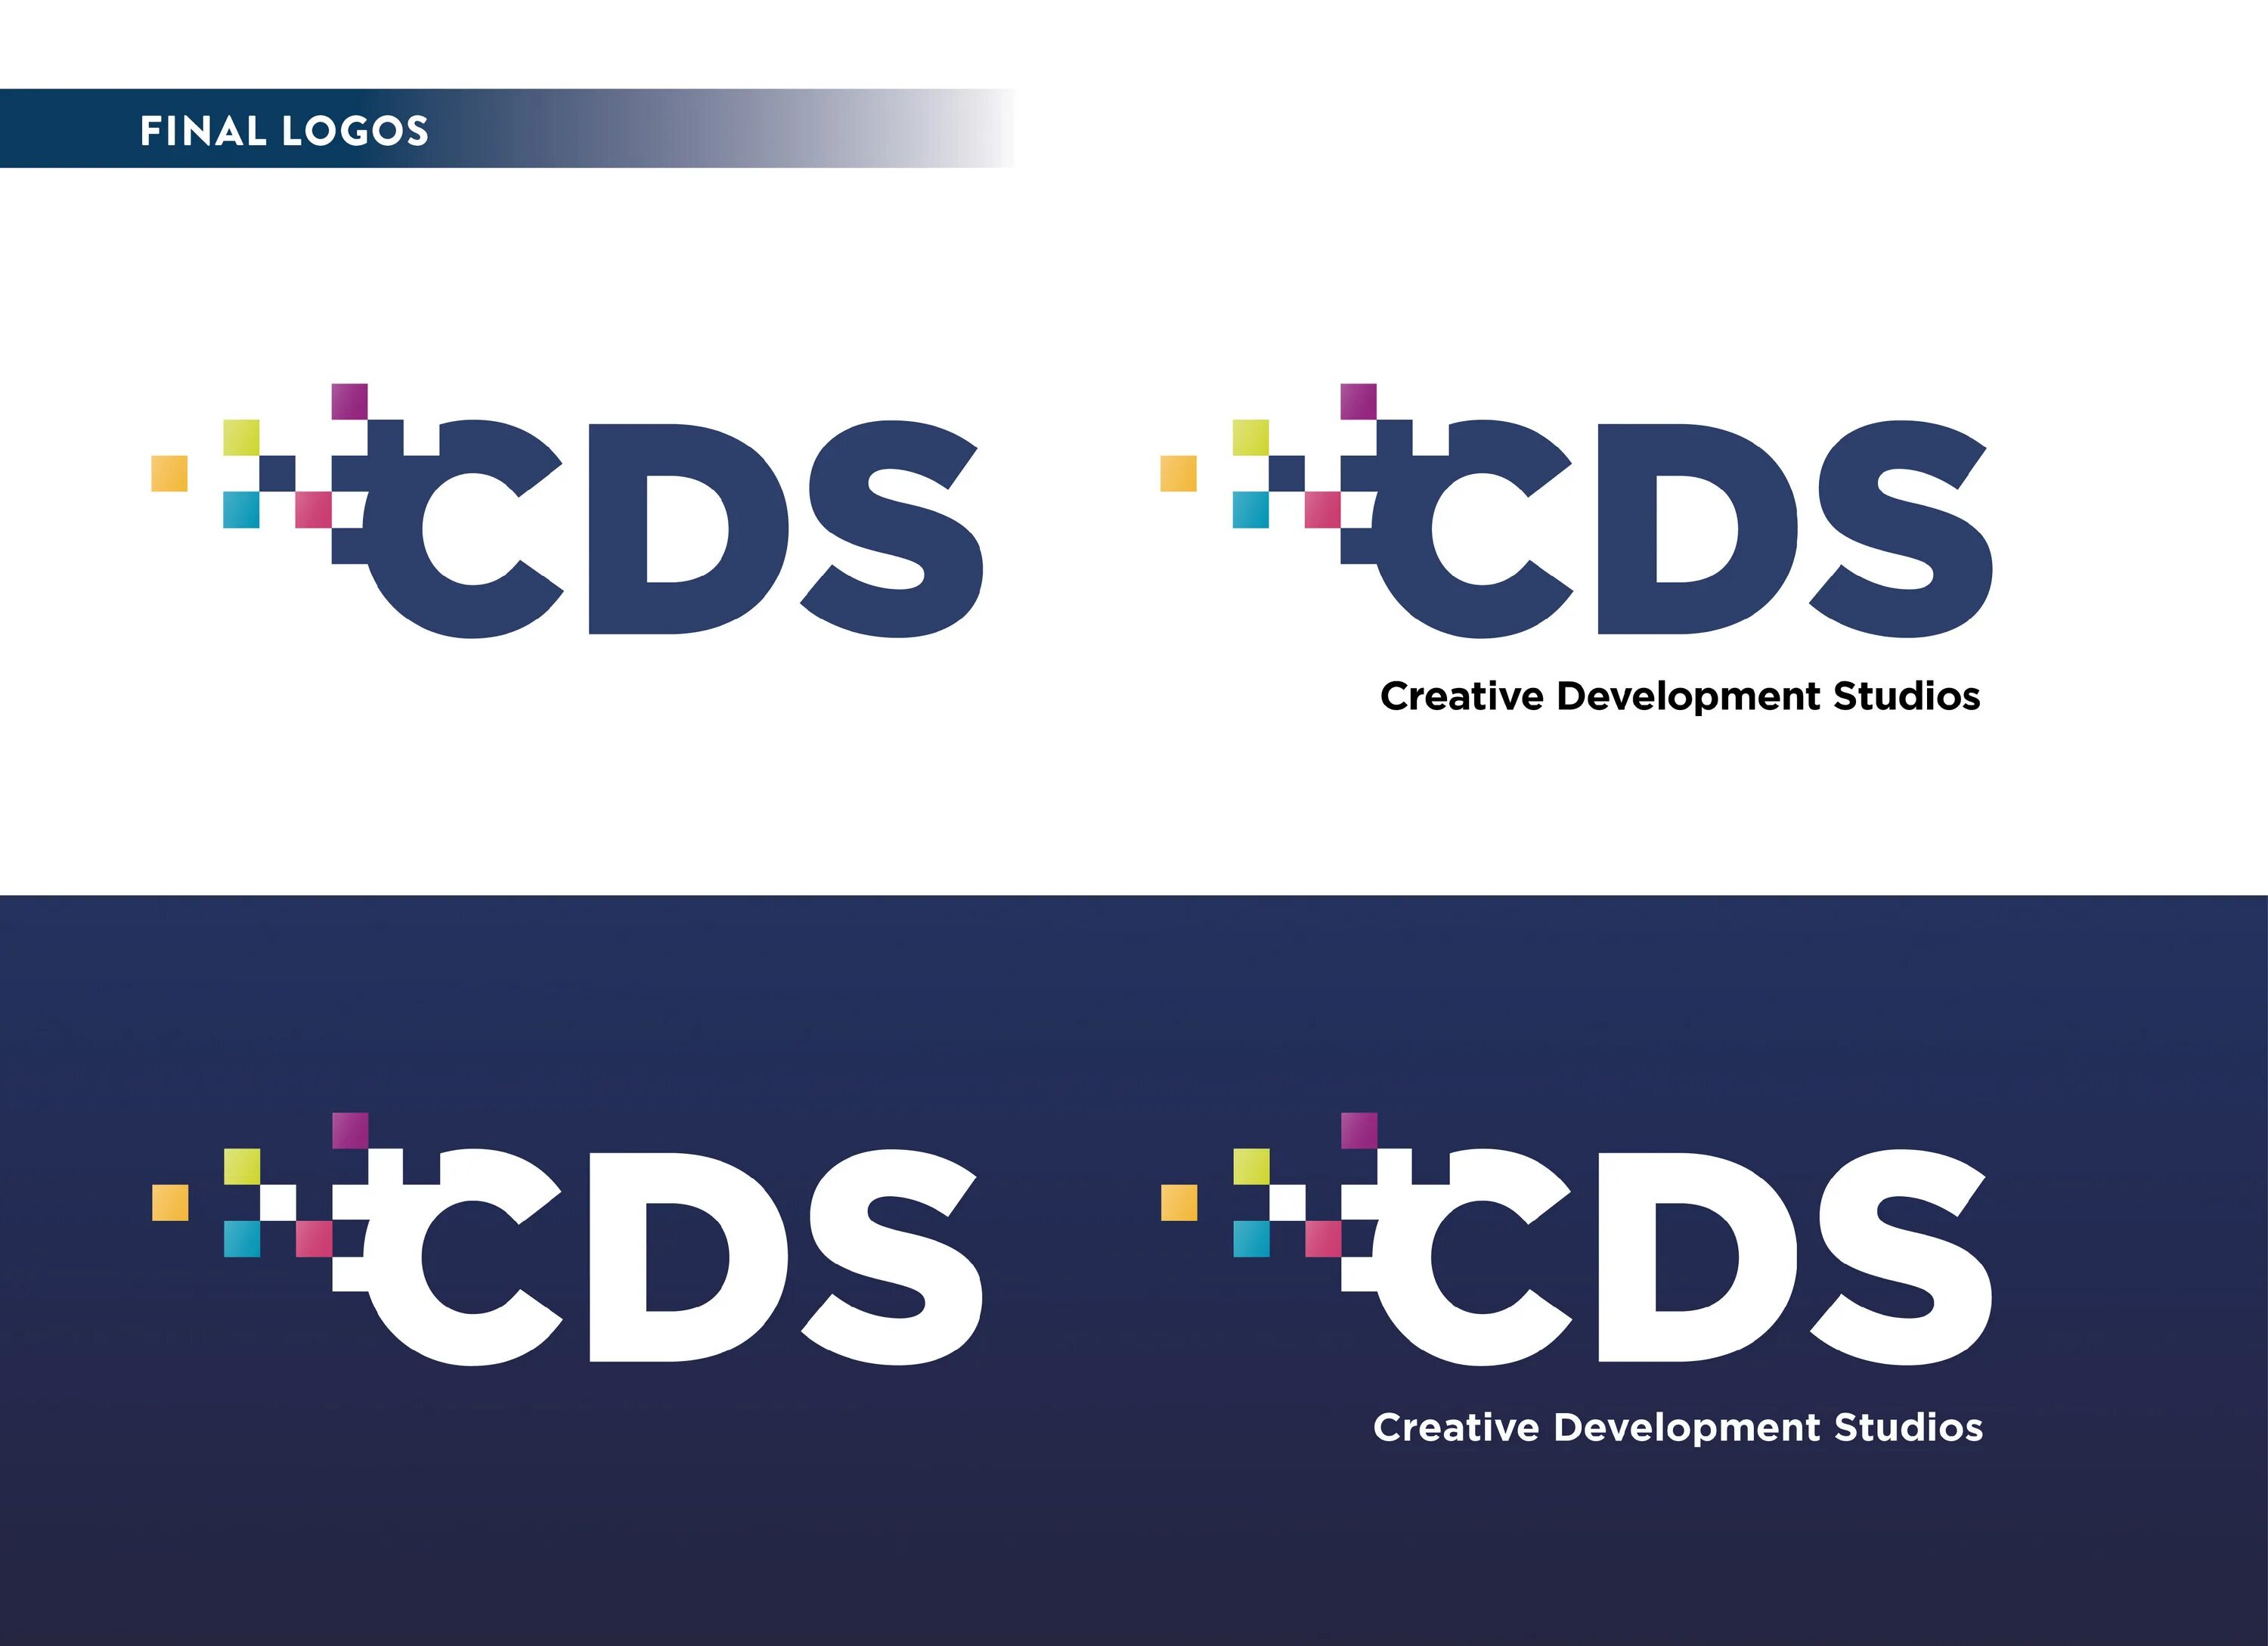 Логотип CDS. ЦДС логотип. Логотип Compact Disc. ЦДС логотип вектор.